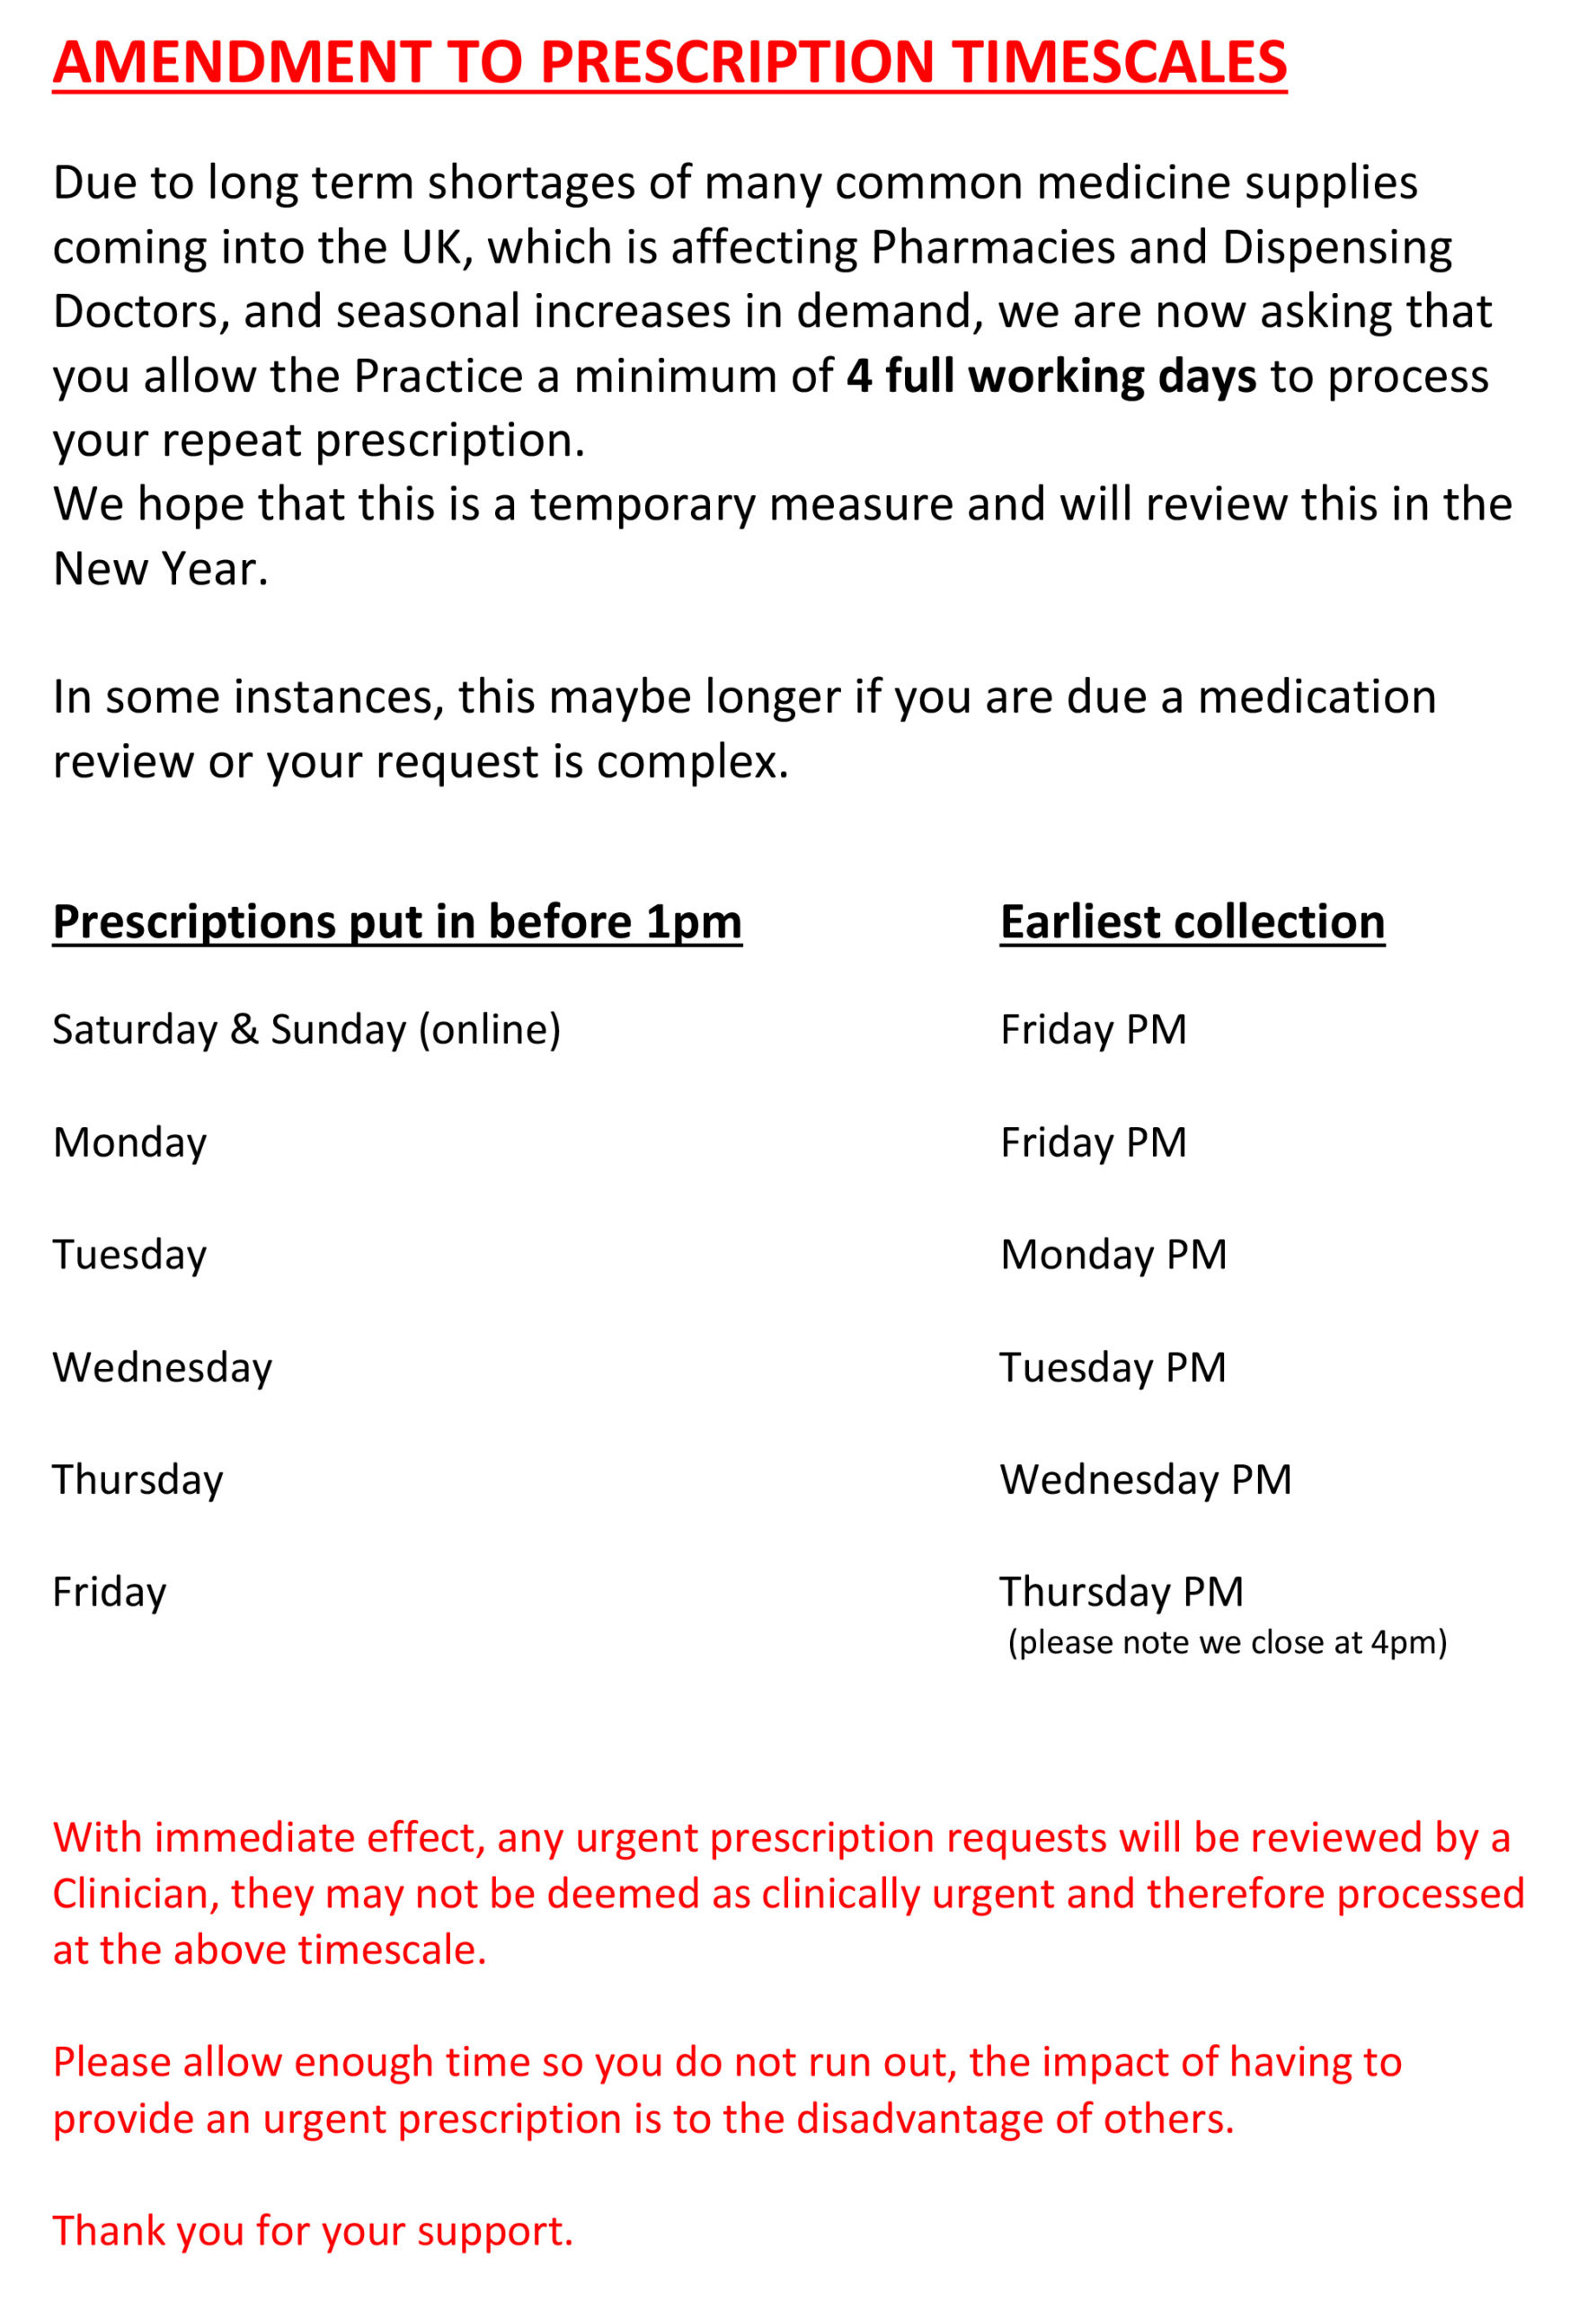 breakdown of amendments to prescription timescales